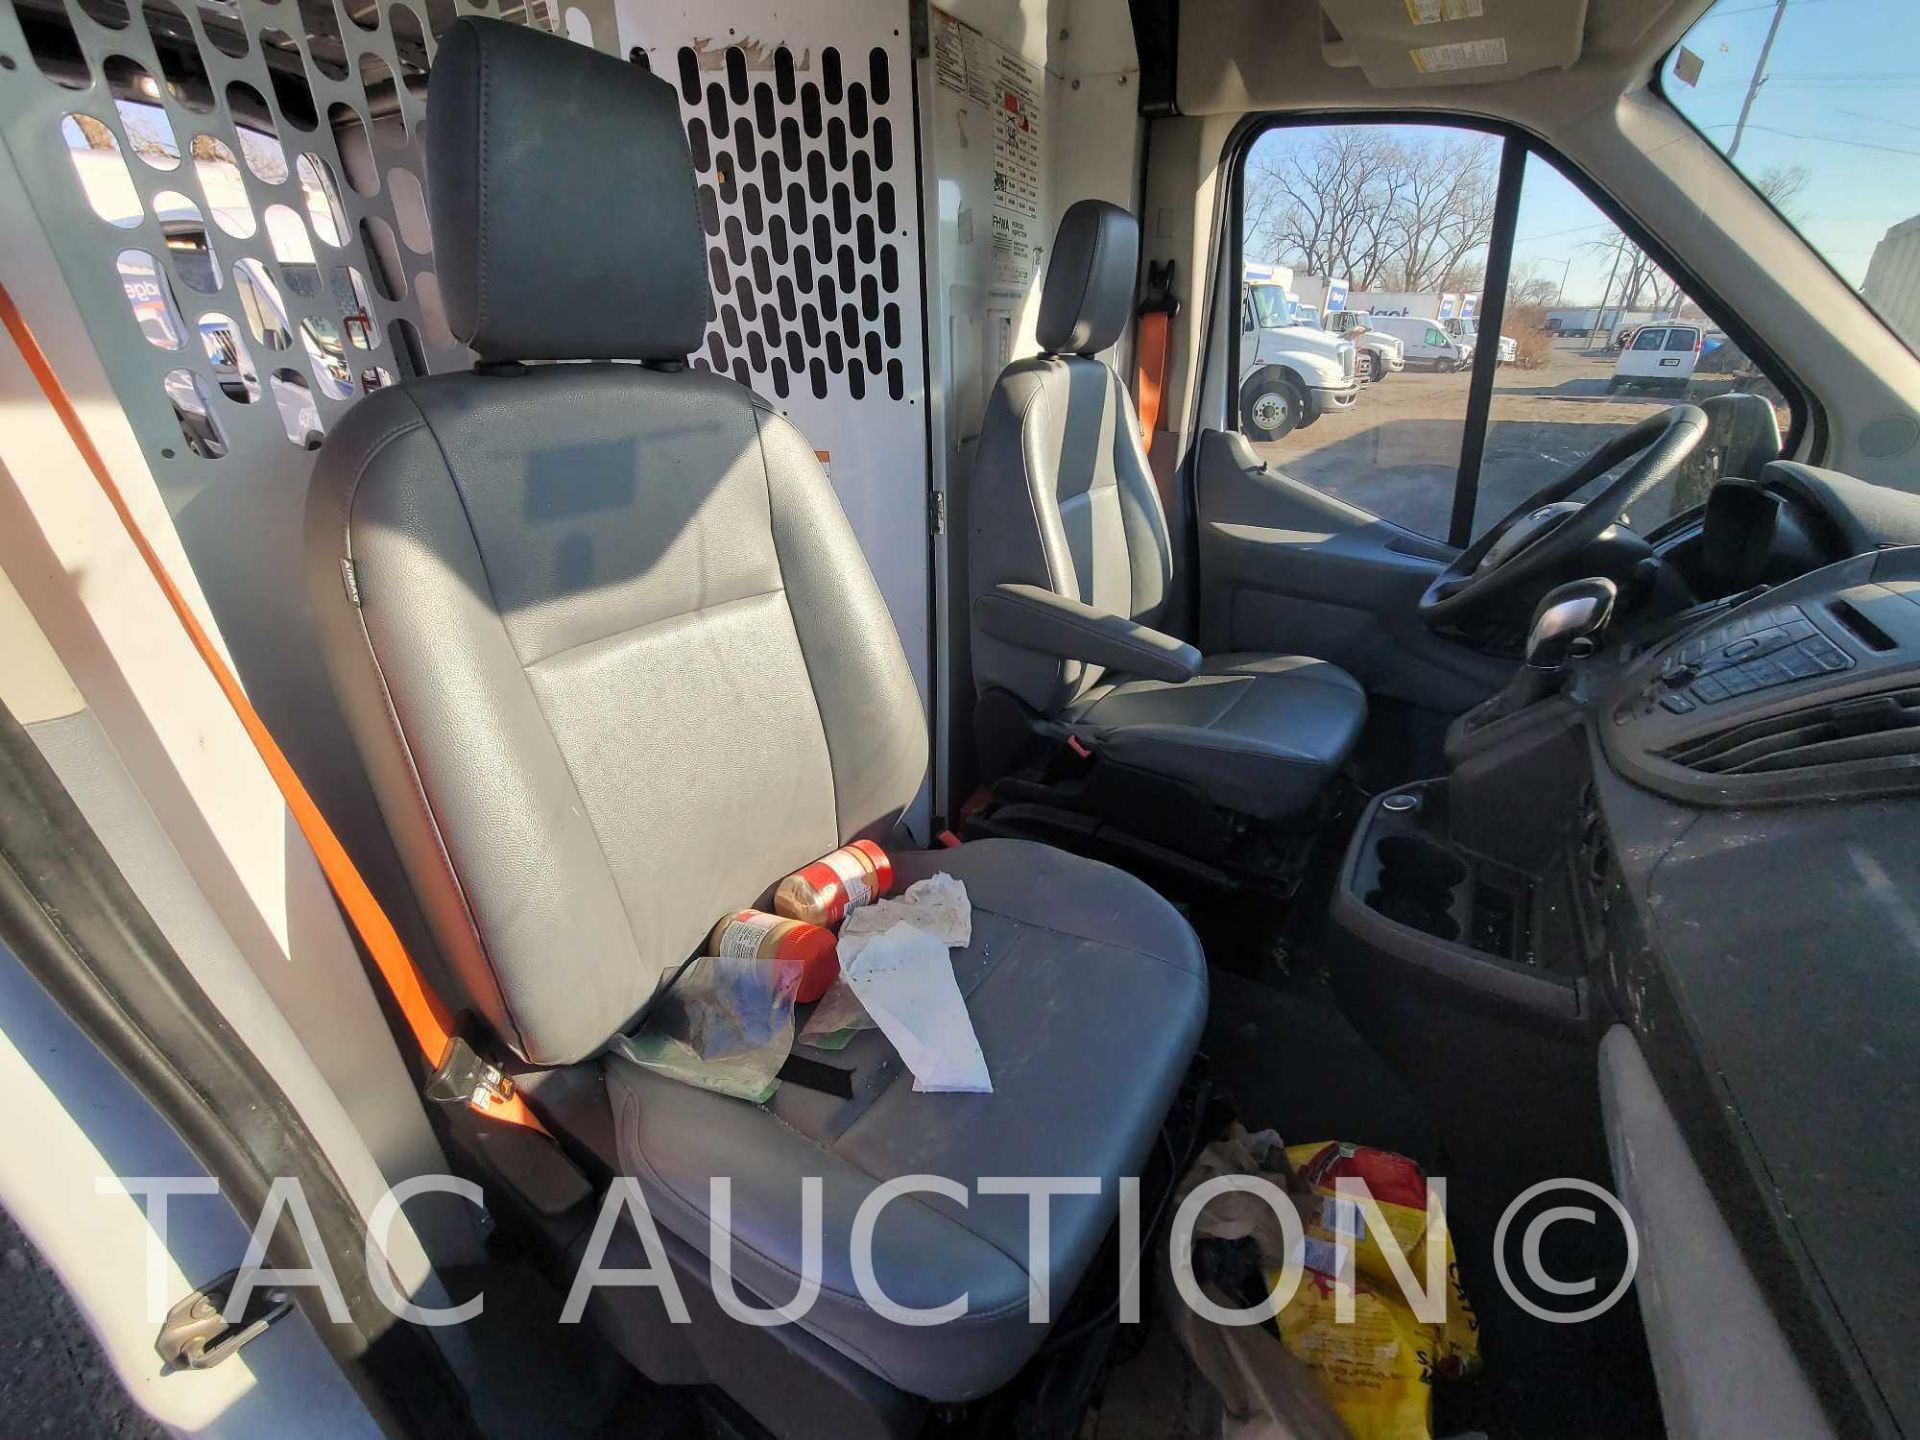 2019 Ford Transit 150 Cargo Van - Image 32 of 51